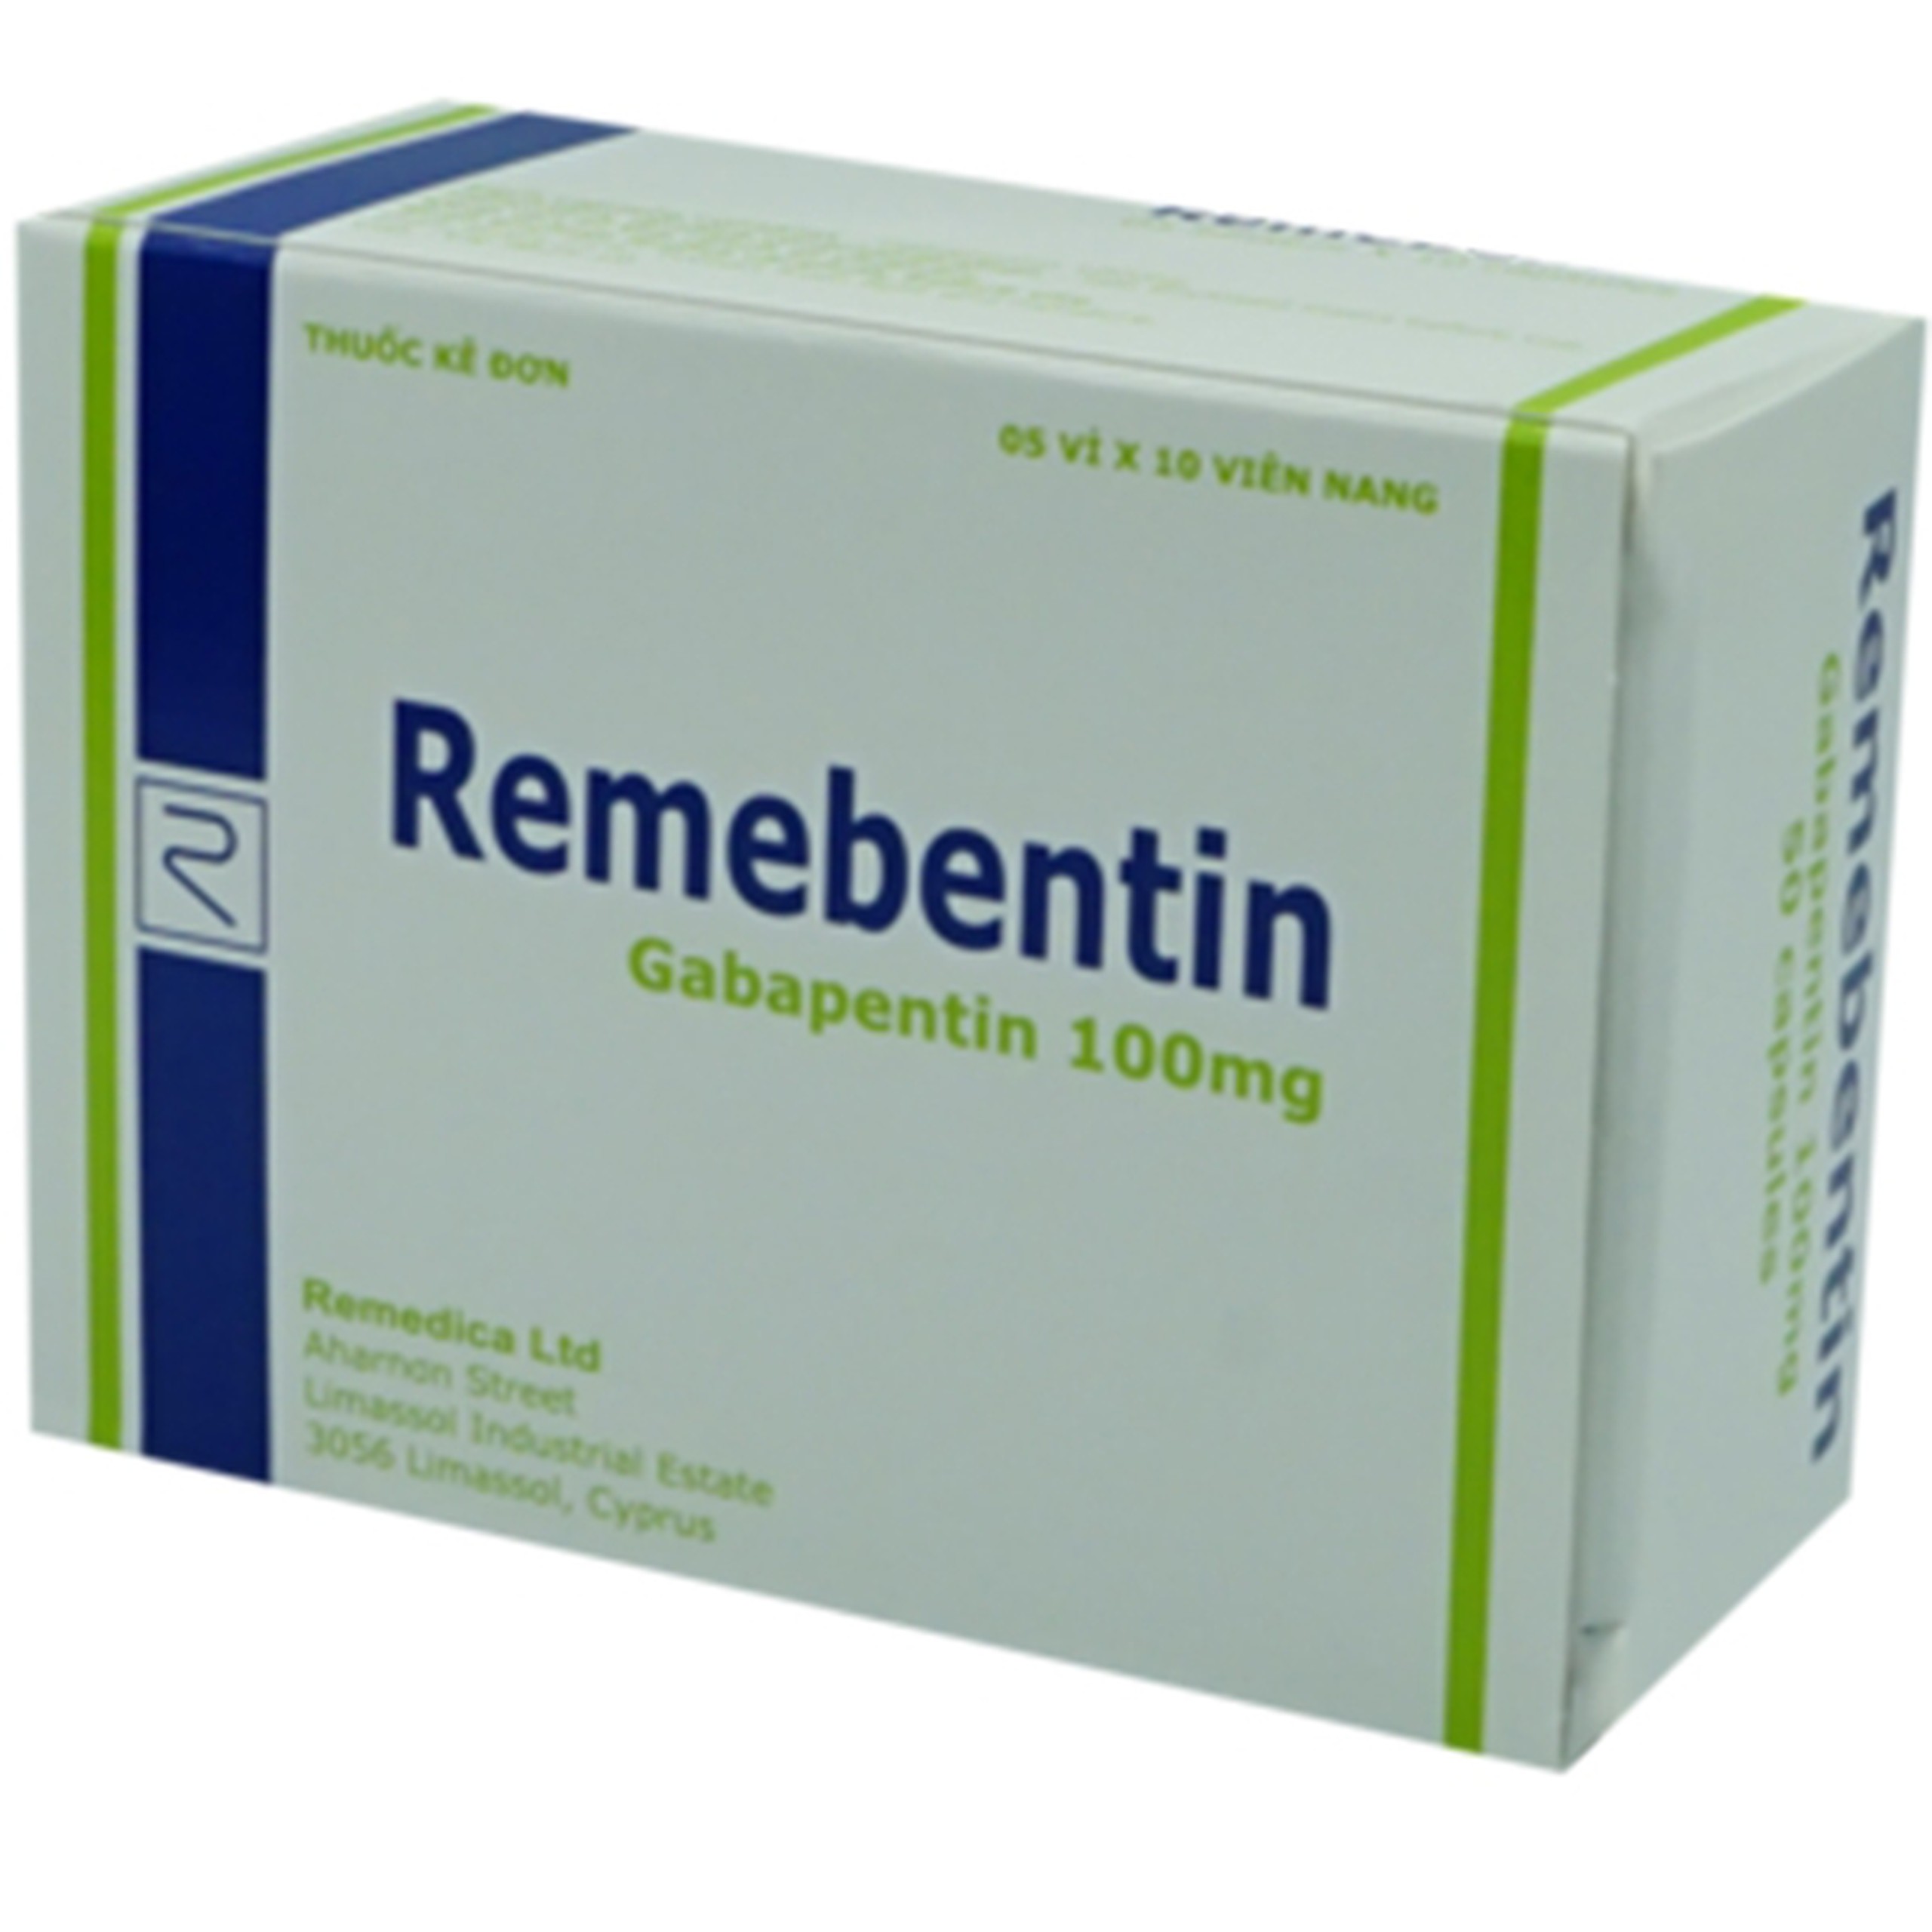 Thuốc Remebentin Remedica điều trị đau do bệnh thần kinh và động kinh (5 vỉ x 10 viên)